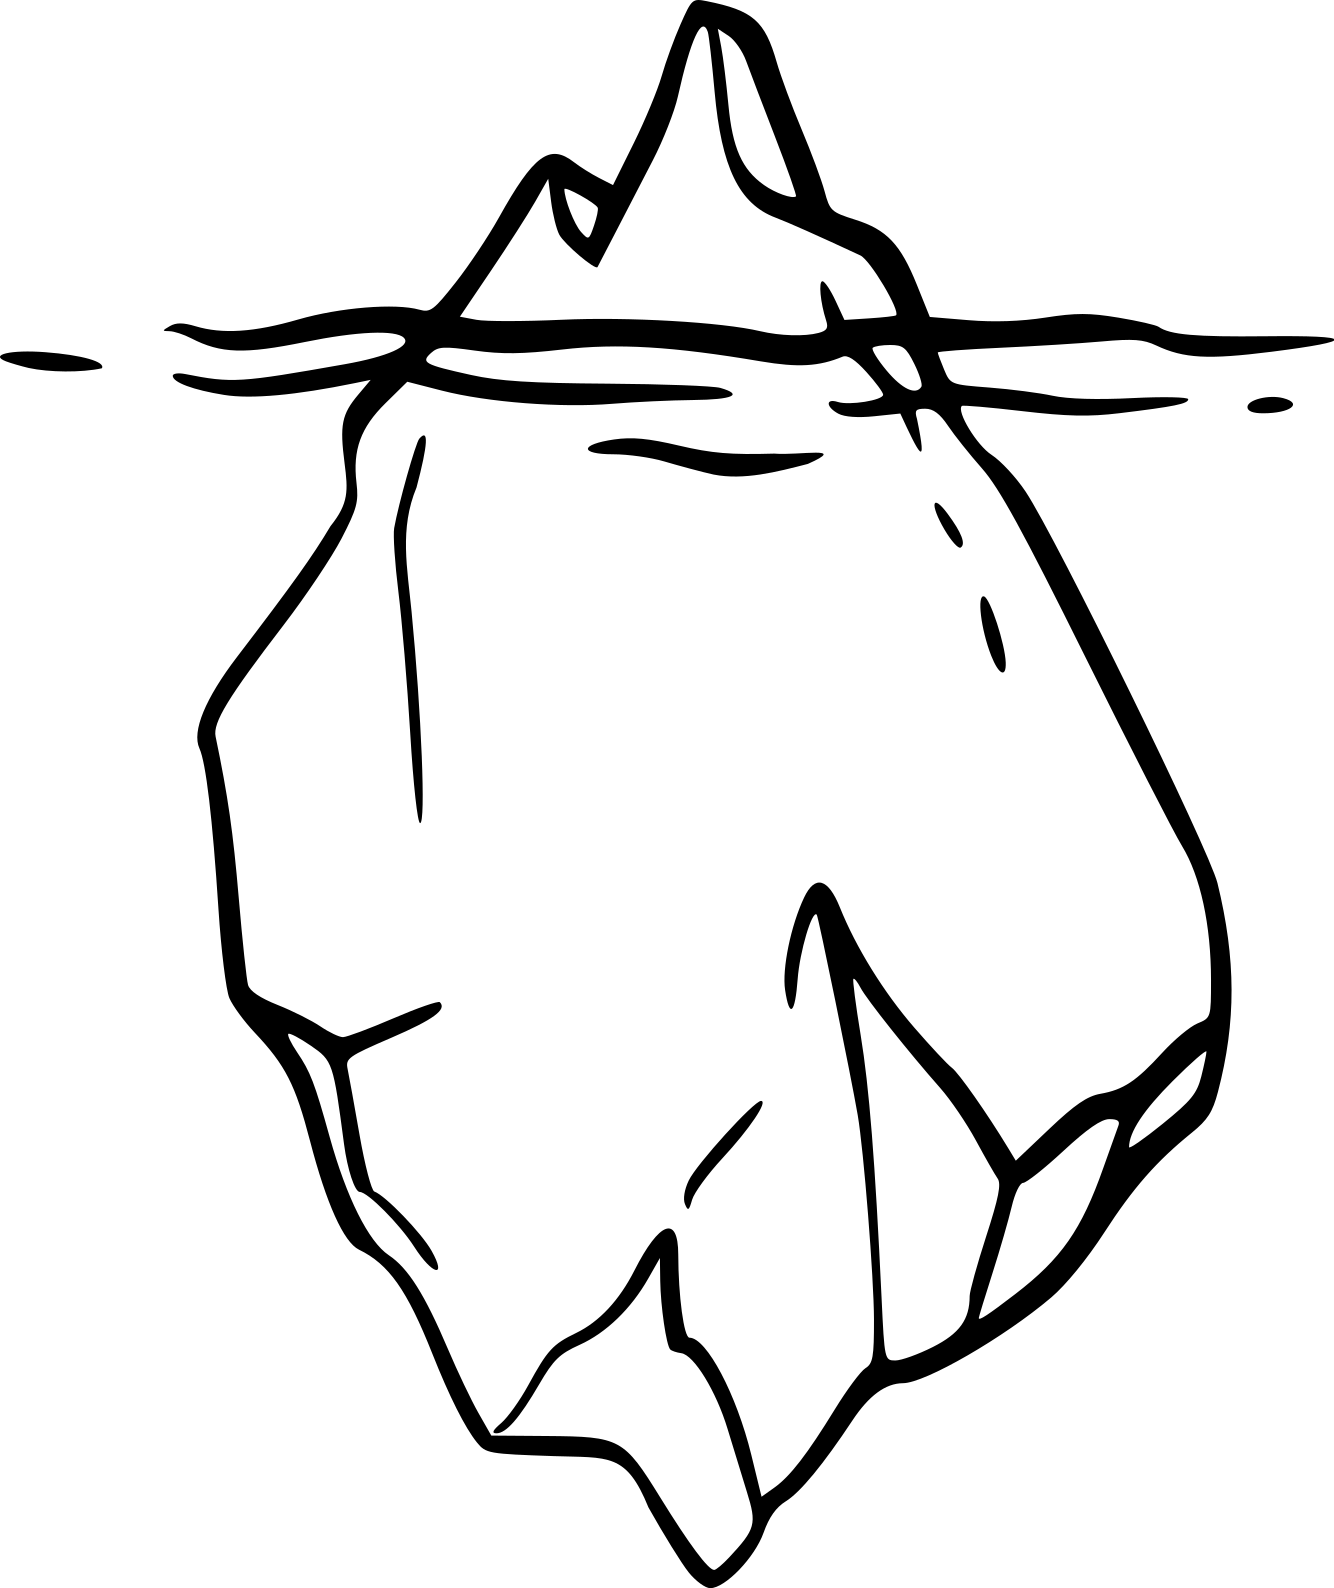 dessin d'un iceberg